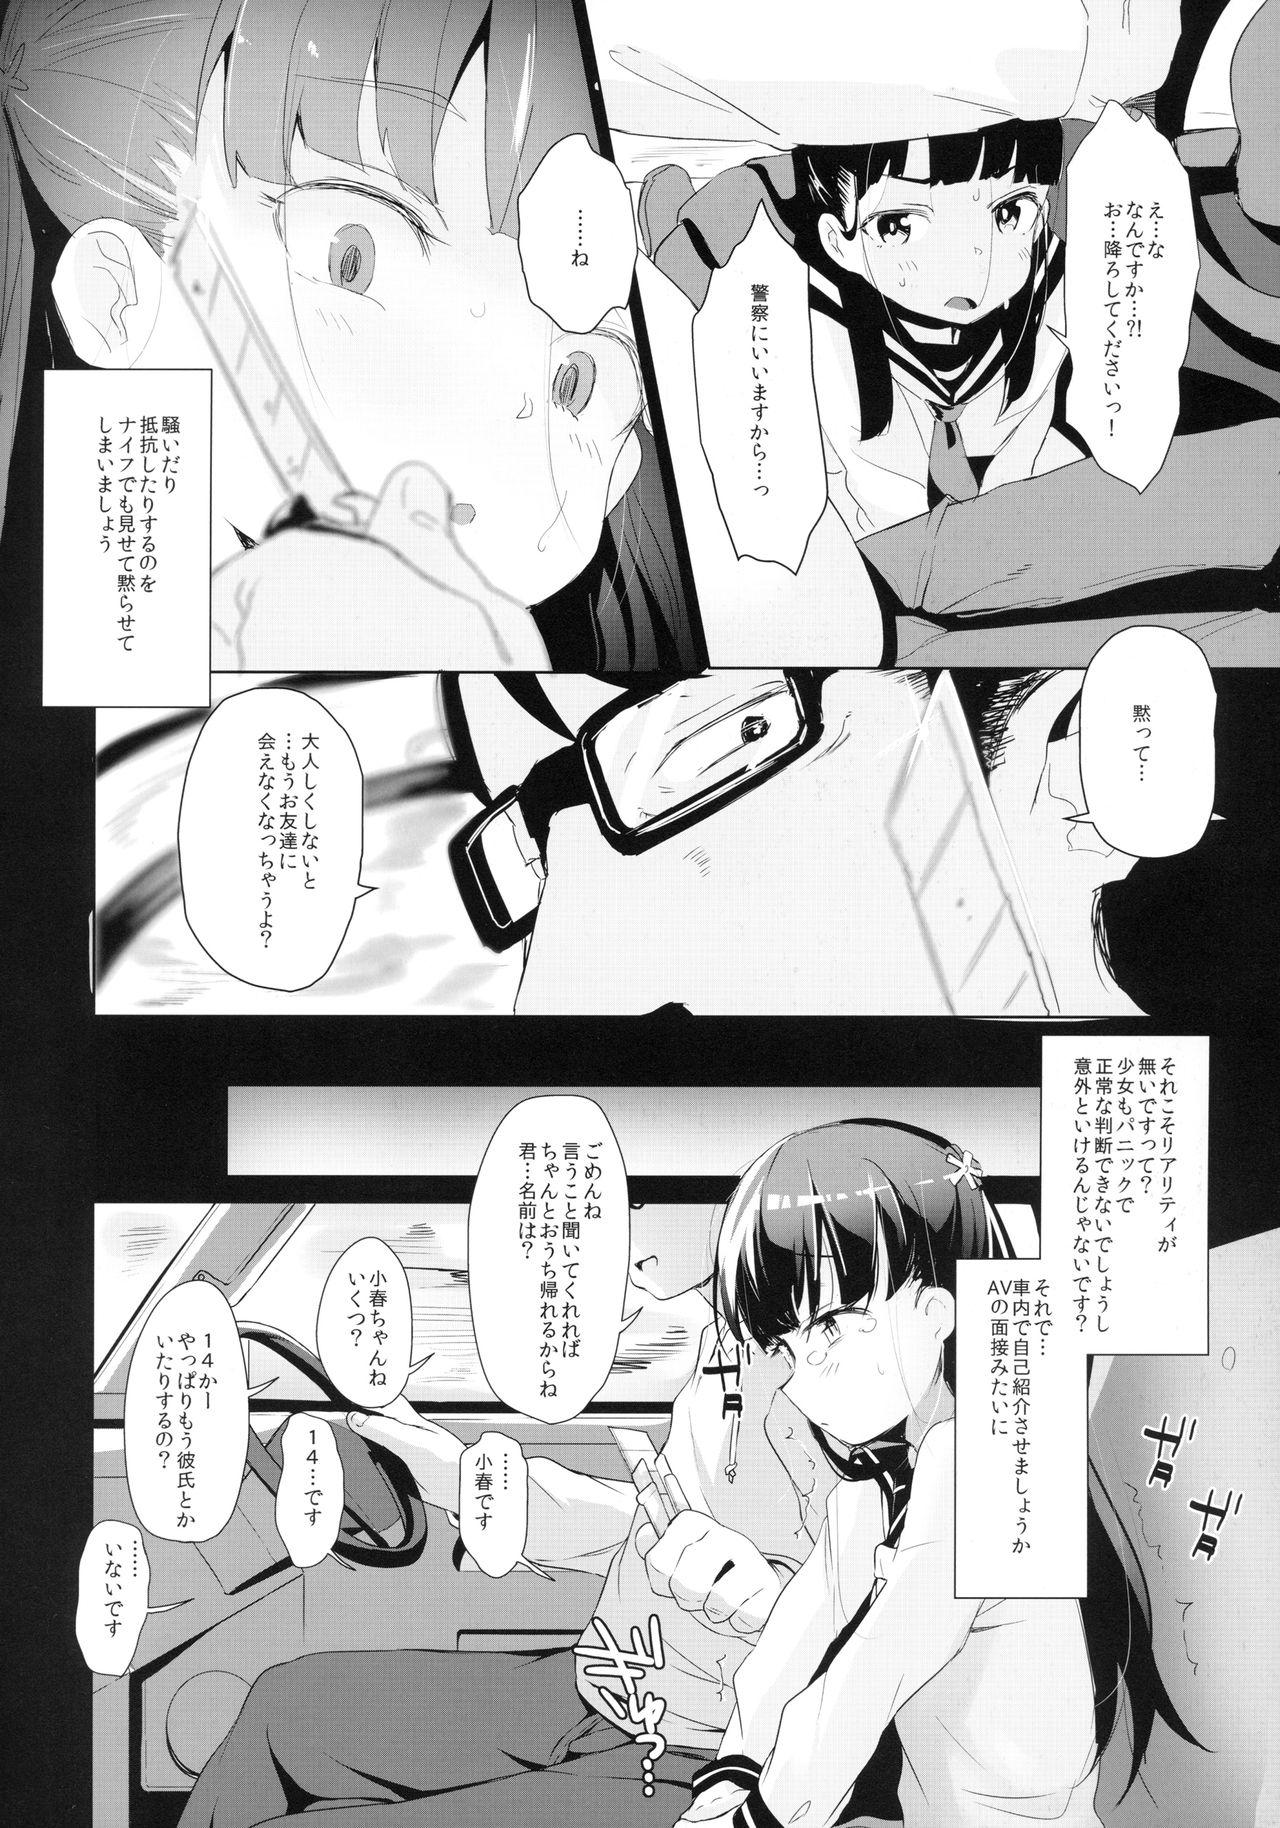 Rachirare Shoujo wa, Manga no Naka de __. Koharu Hen 6